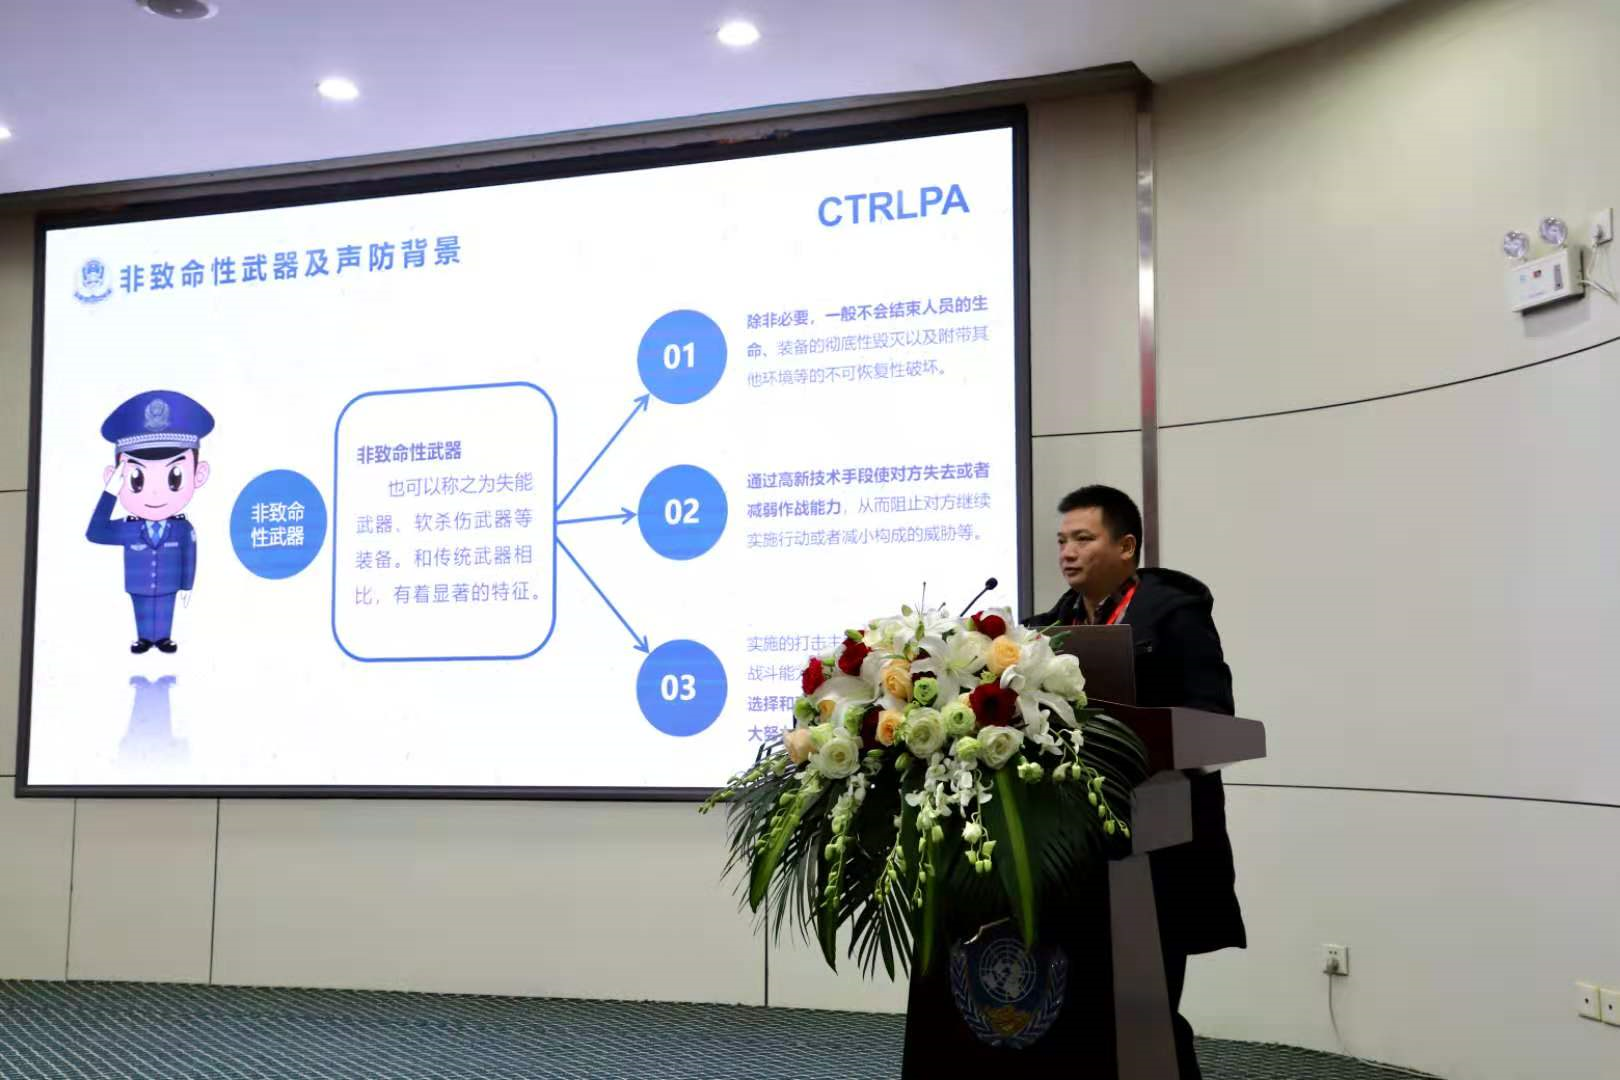 中国人民警察大学成功举办“2020首届警用装备技术学术会议”！(组图)